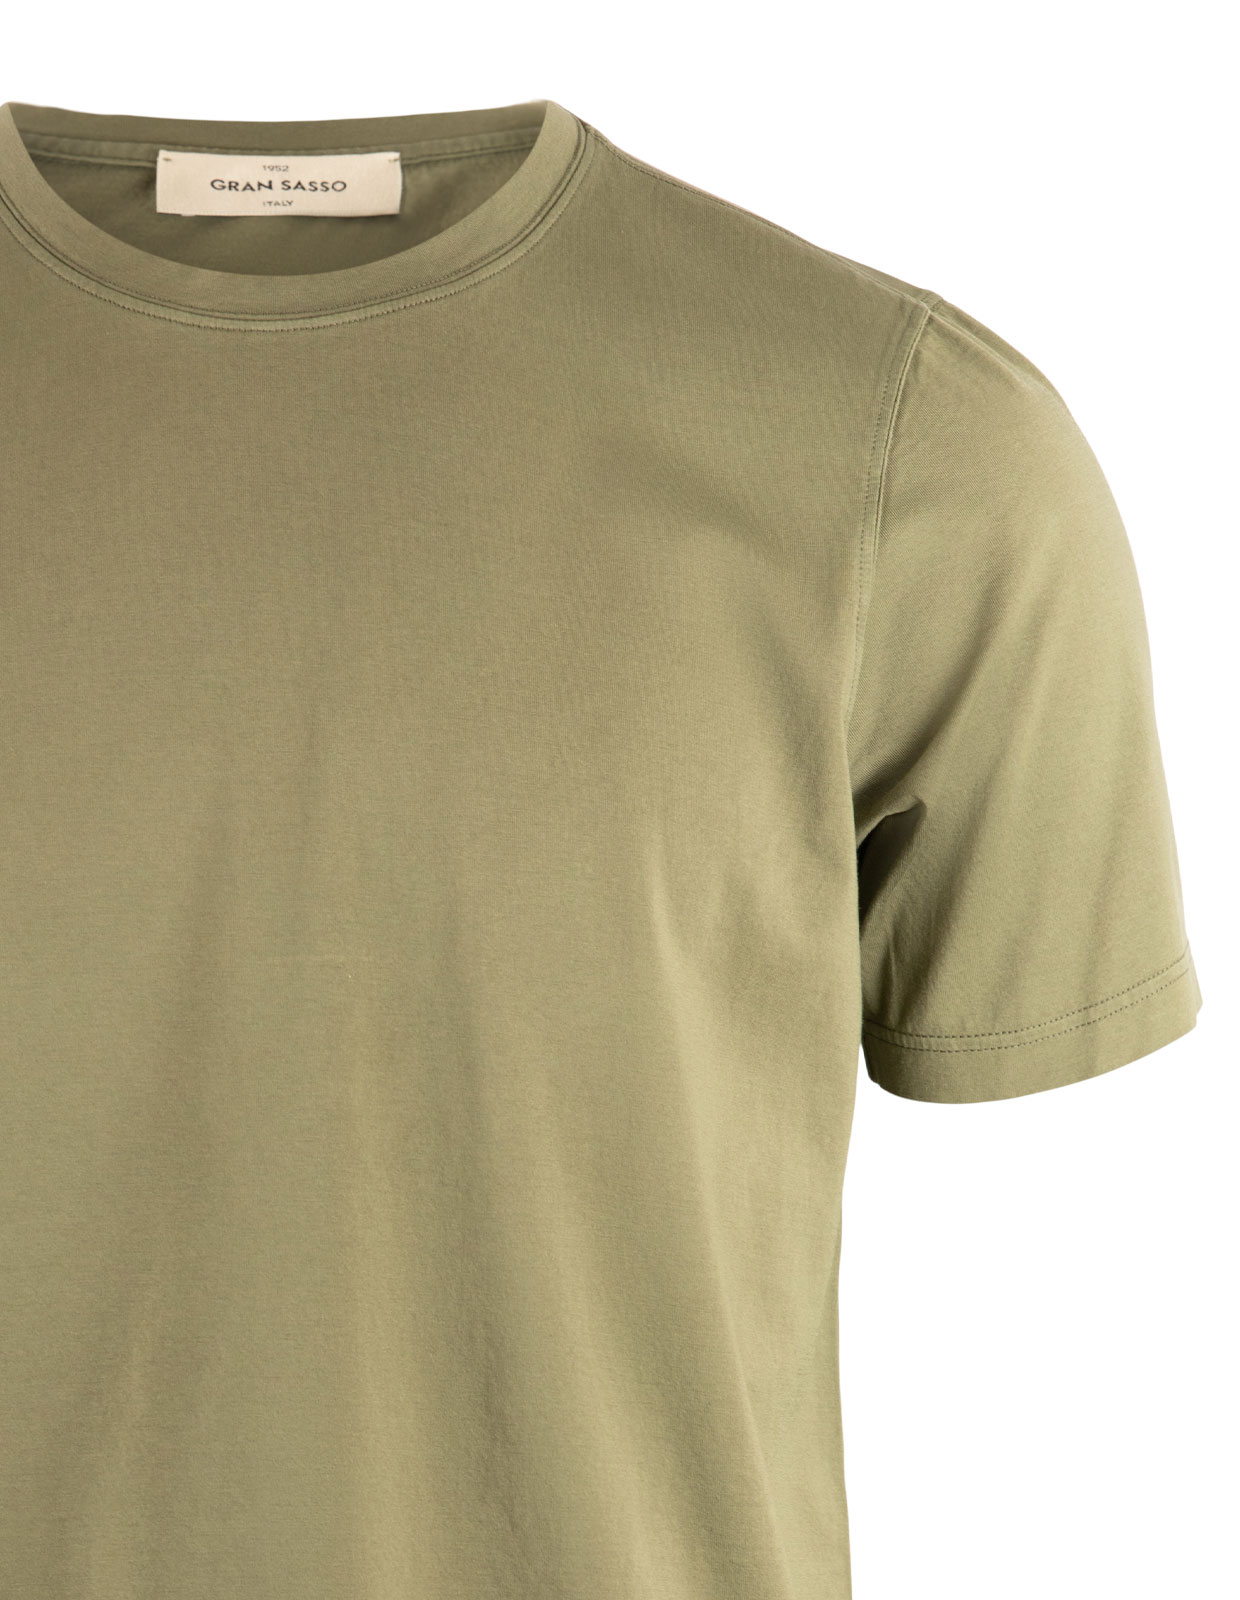 T-Shirt Bomull Olivgrön Stl 56